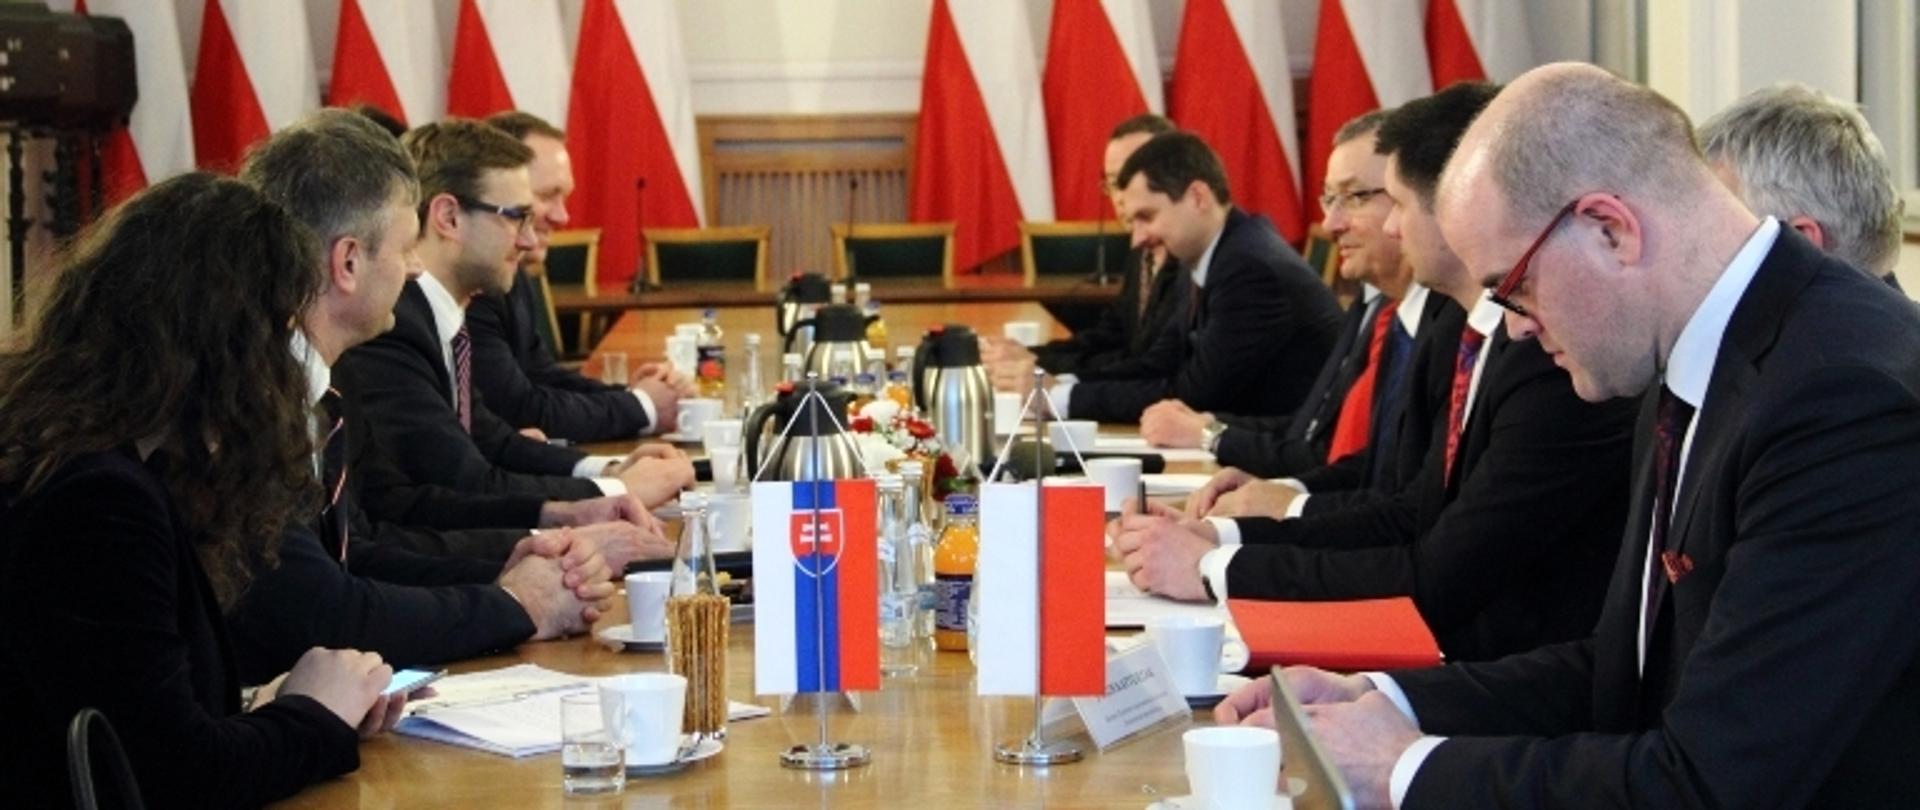 Wizyta słowackich parlamentarzystów w Ministerstwie Infrastruktury